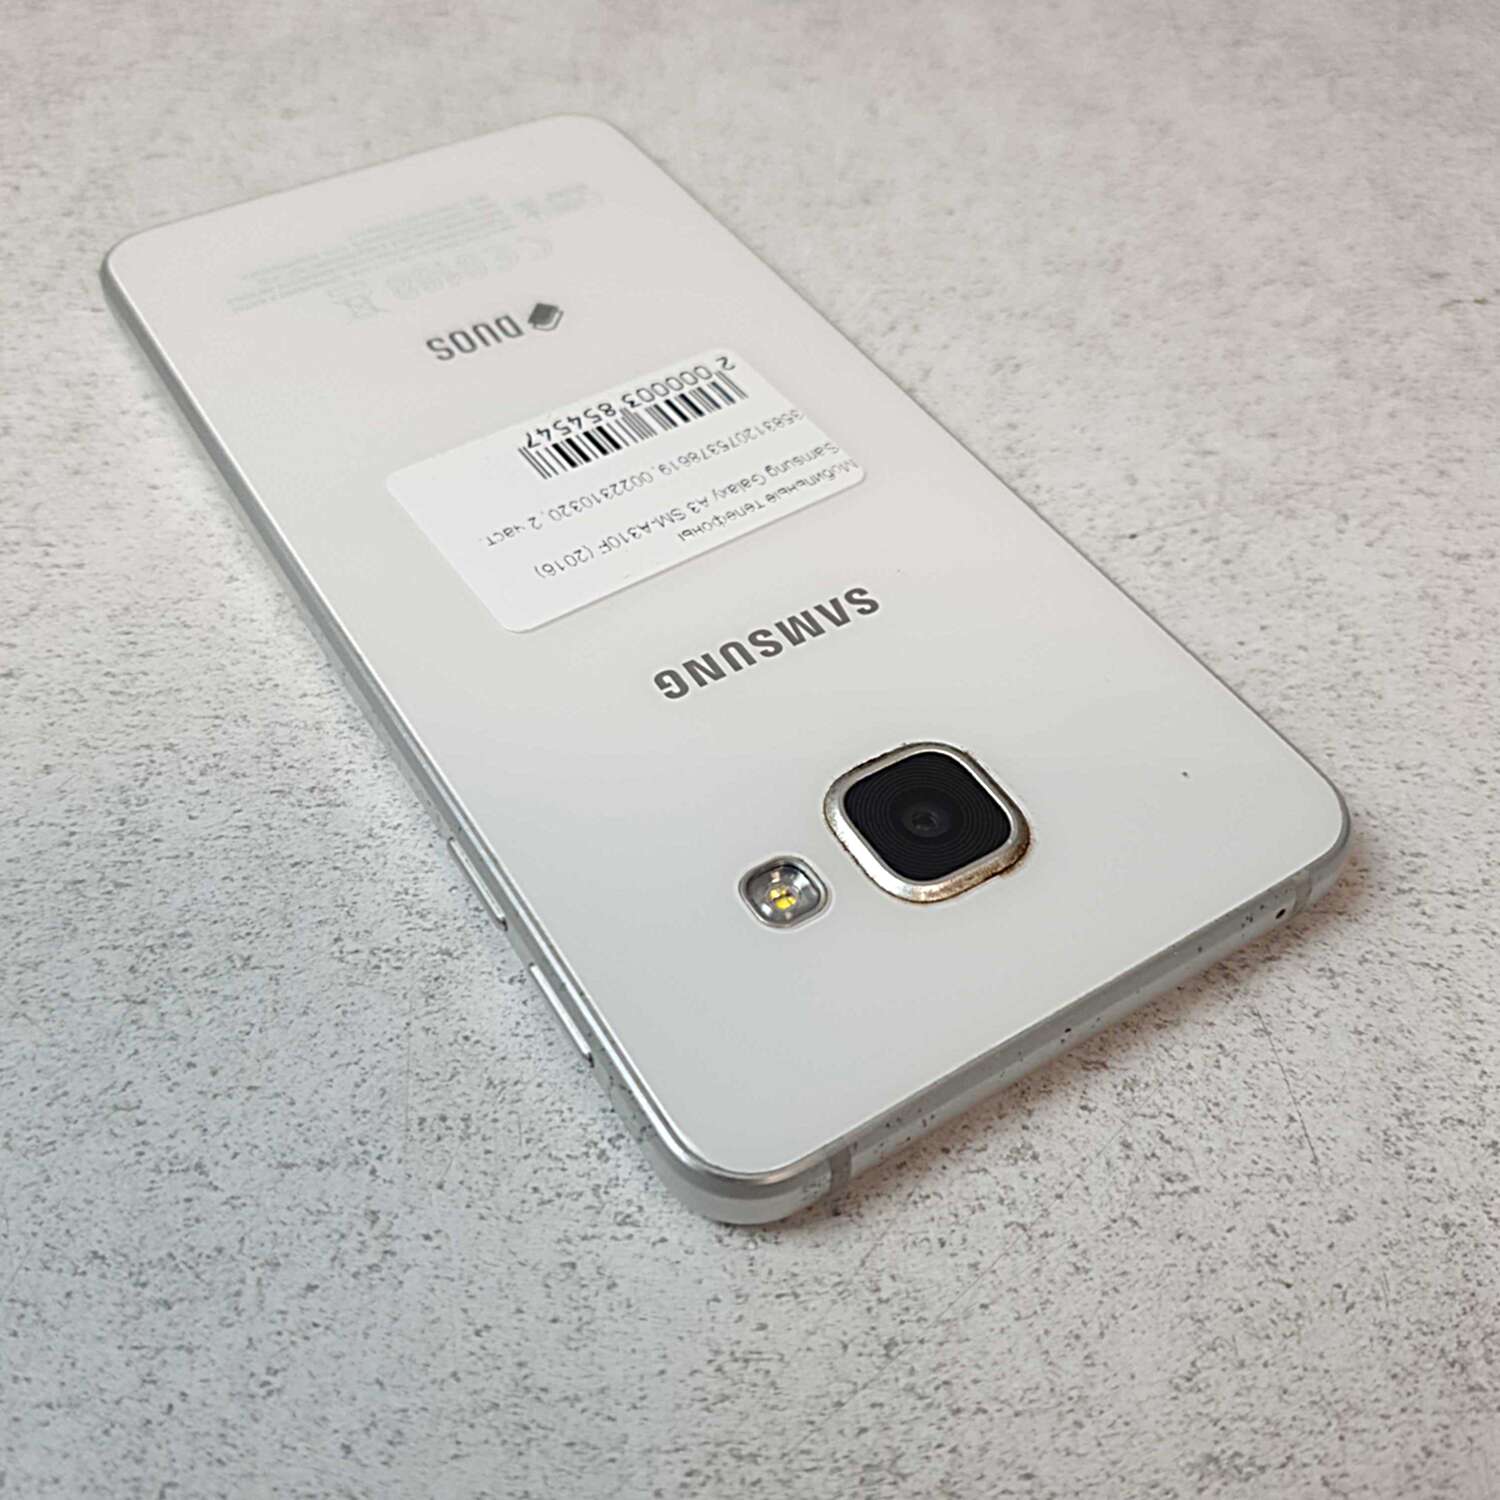 Samsung Galaxy A3 (SM-A310F) 2016 1/16Gb 8